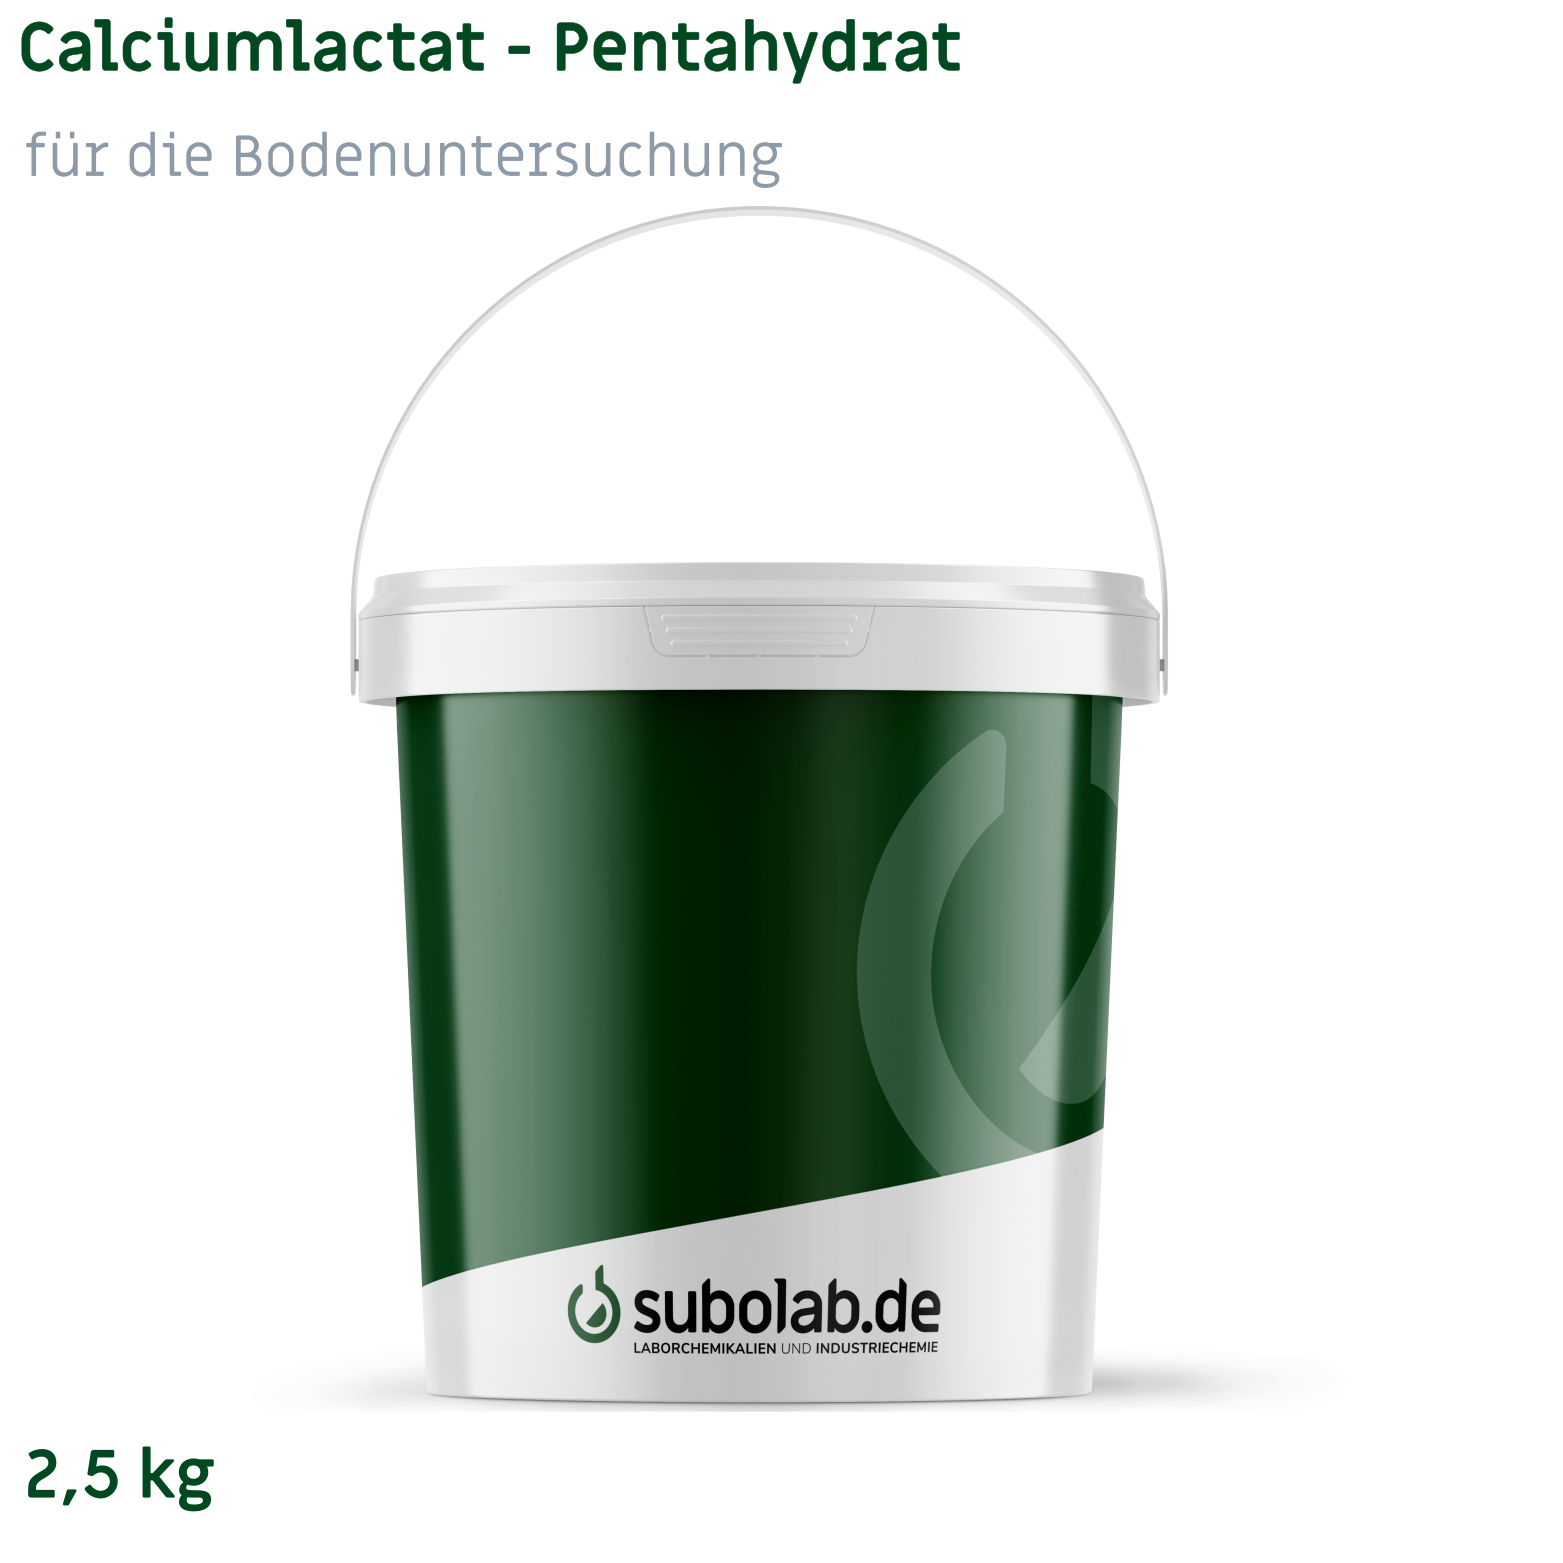 Bild von Calciumlactat - Pentahydrat für die Bodenuntersuchung (2,5 kg)